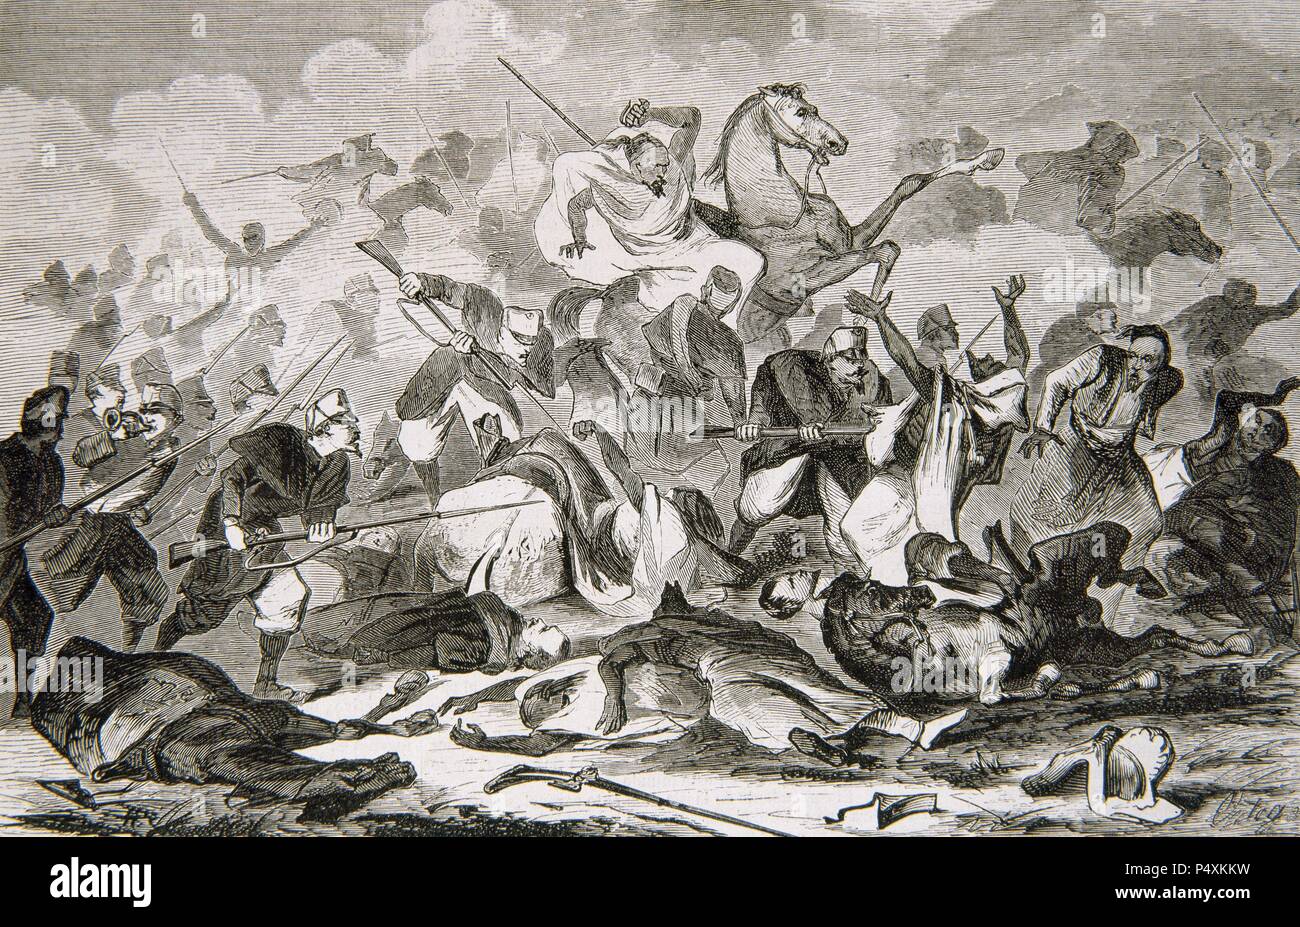 La guerre hispano-marocaine (1859-1860). La charge d'infanterie espagnole contre la cavalerie arabe. Gravure "musée universel" (1860). Banque D'Images